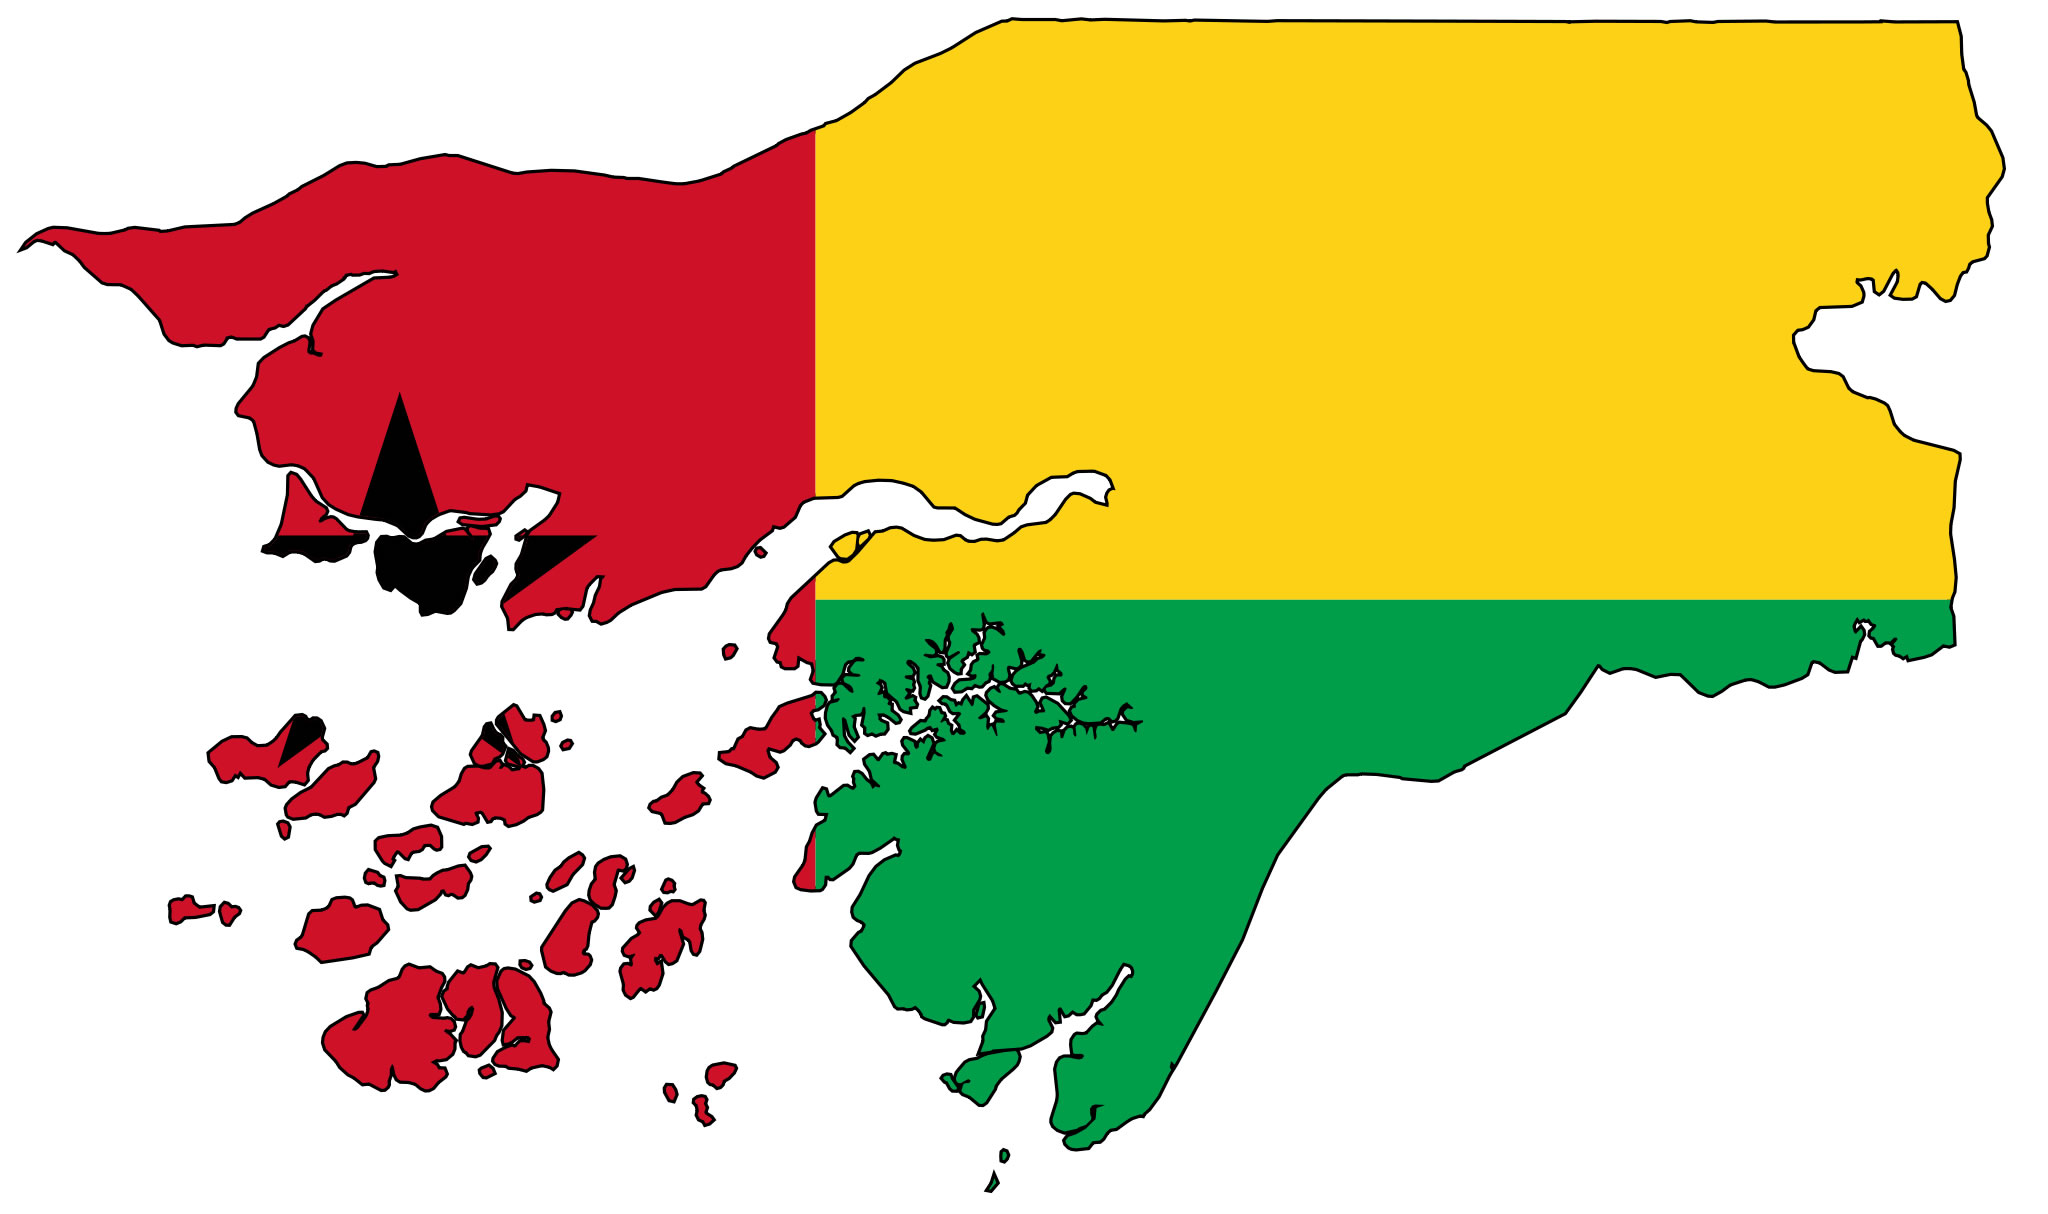 Résultat de recherche d'images pour "Guinée bissau carte et drapeau"